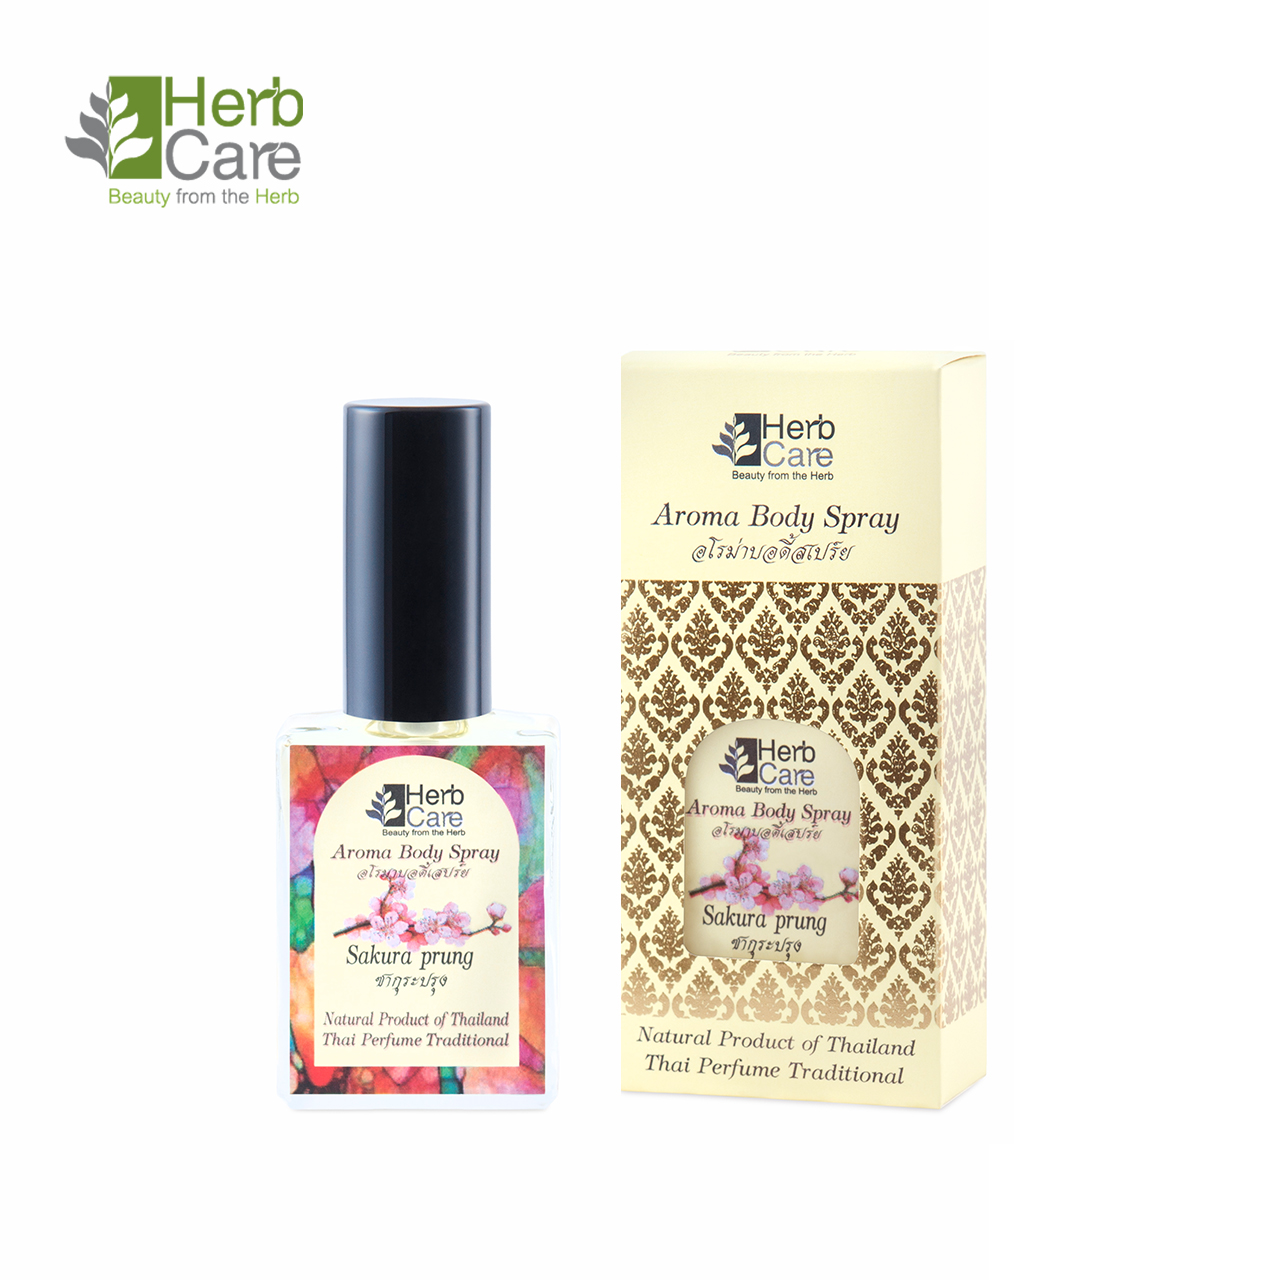 Sakura Prung : Aroma Body Perfume